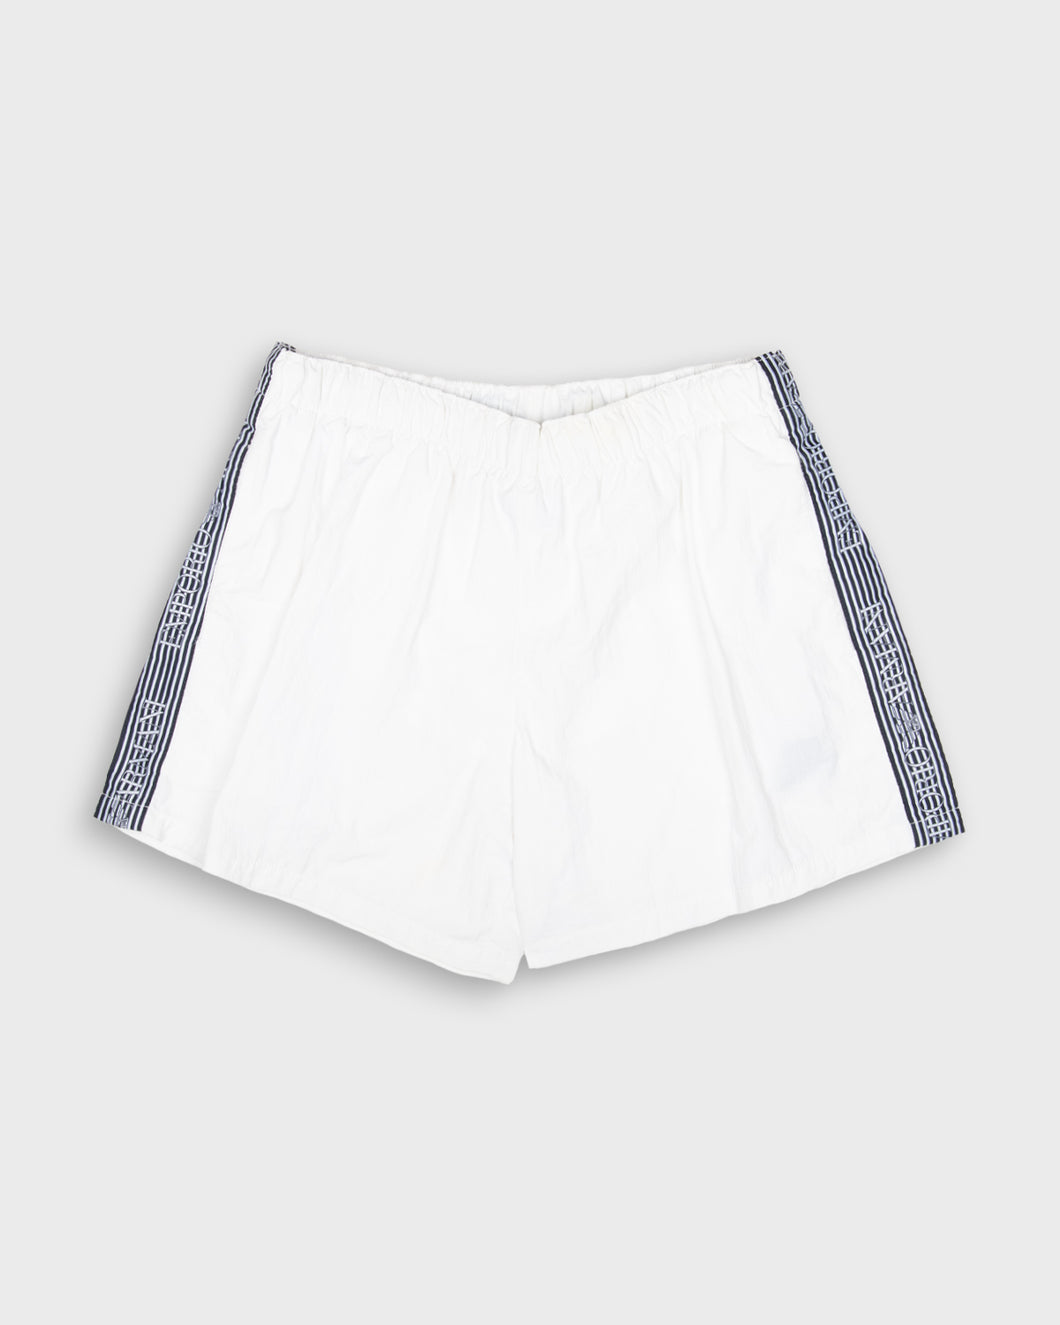 Emporio Armani striped branded white shorts